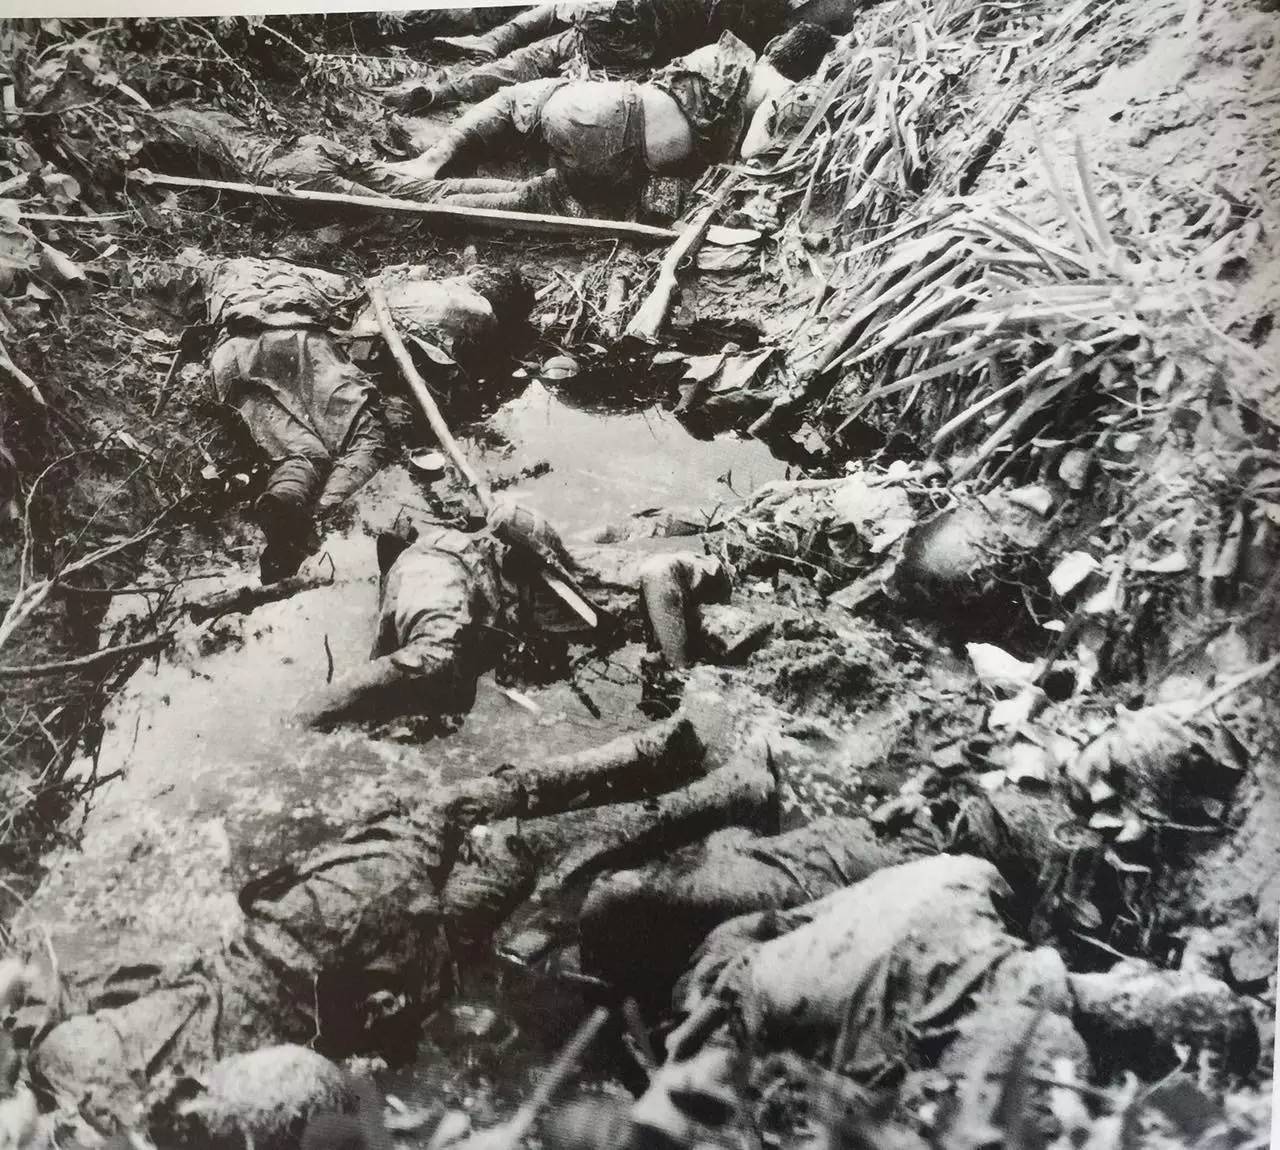 跳崖自杀的日军伤兵塞班岛东北端海岸,又名马皮角,山势险要